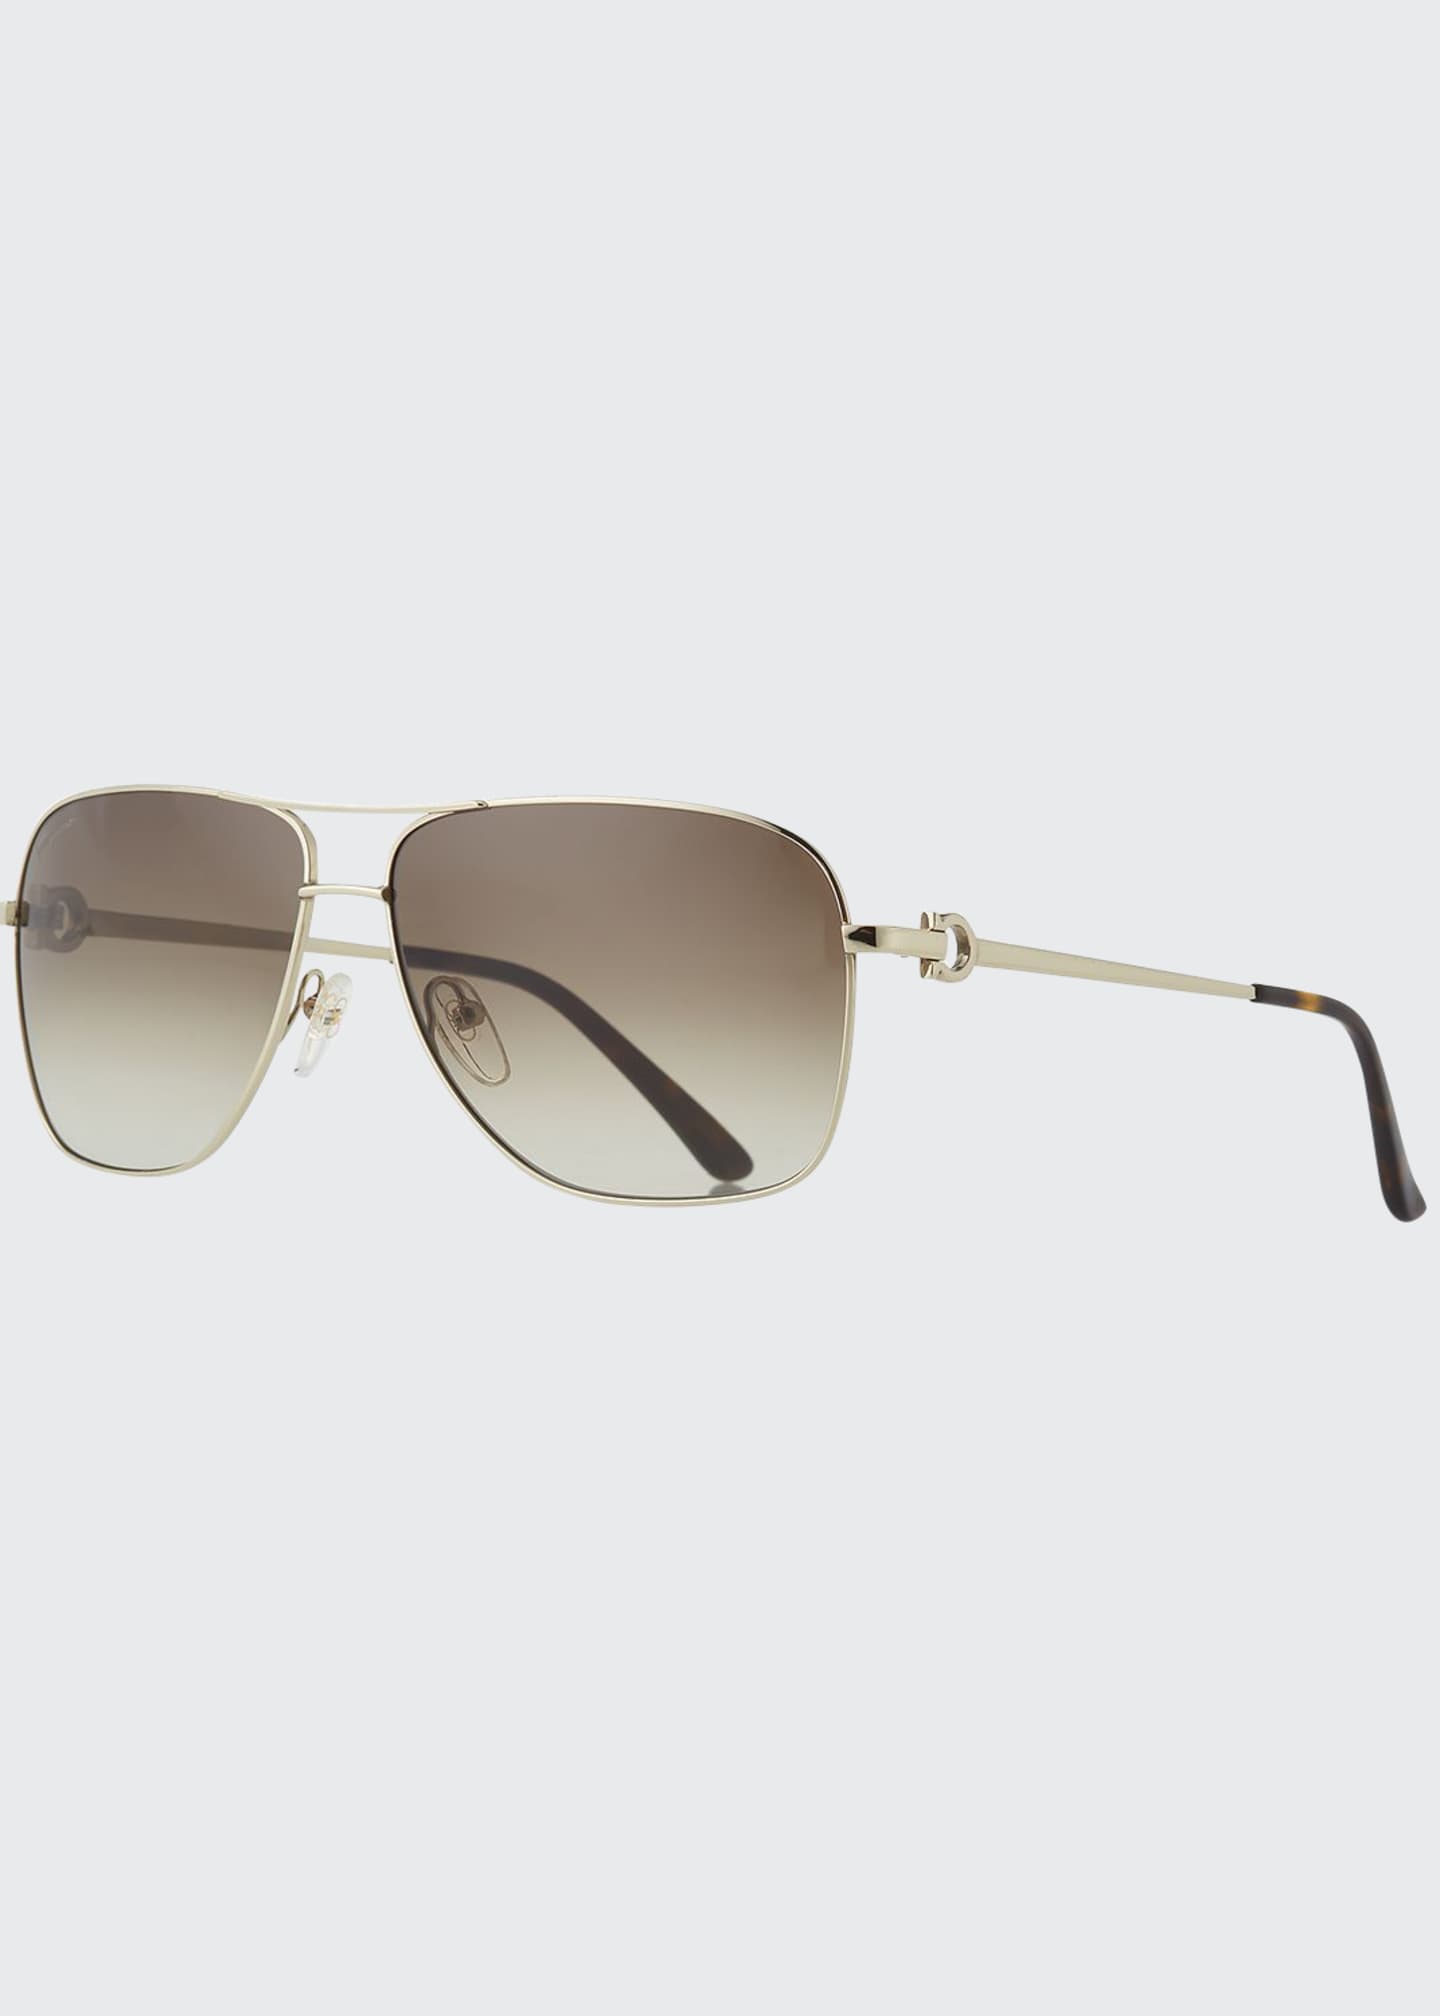 Salvatore Ferragamo Men's Signature Metal Navigator Sunglasses ...